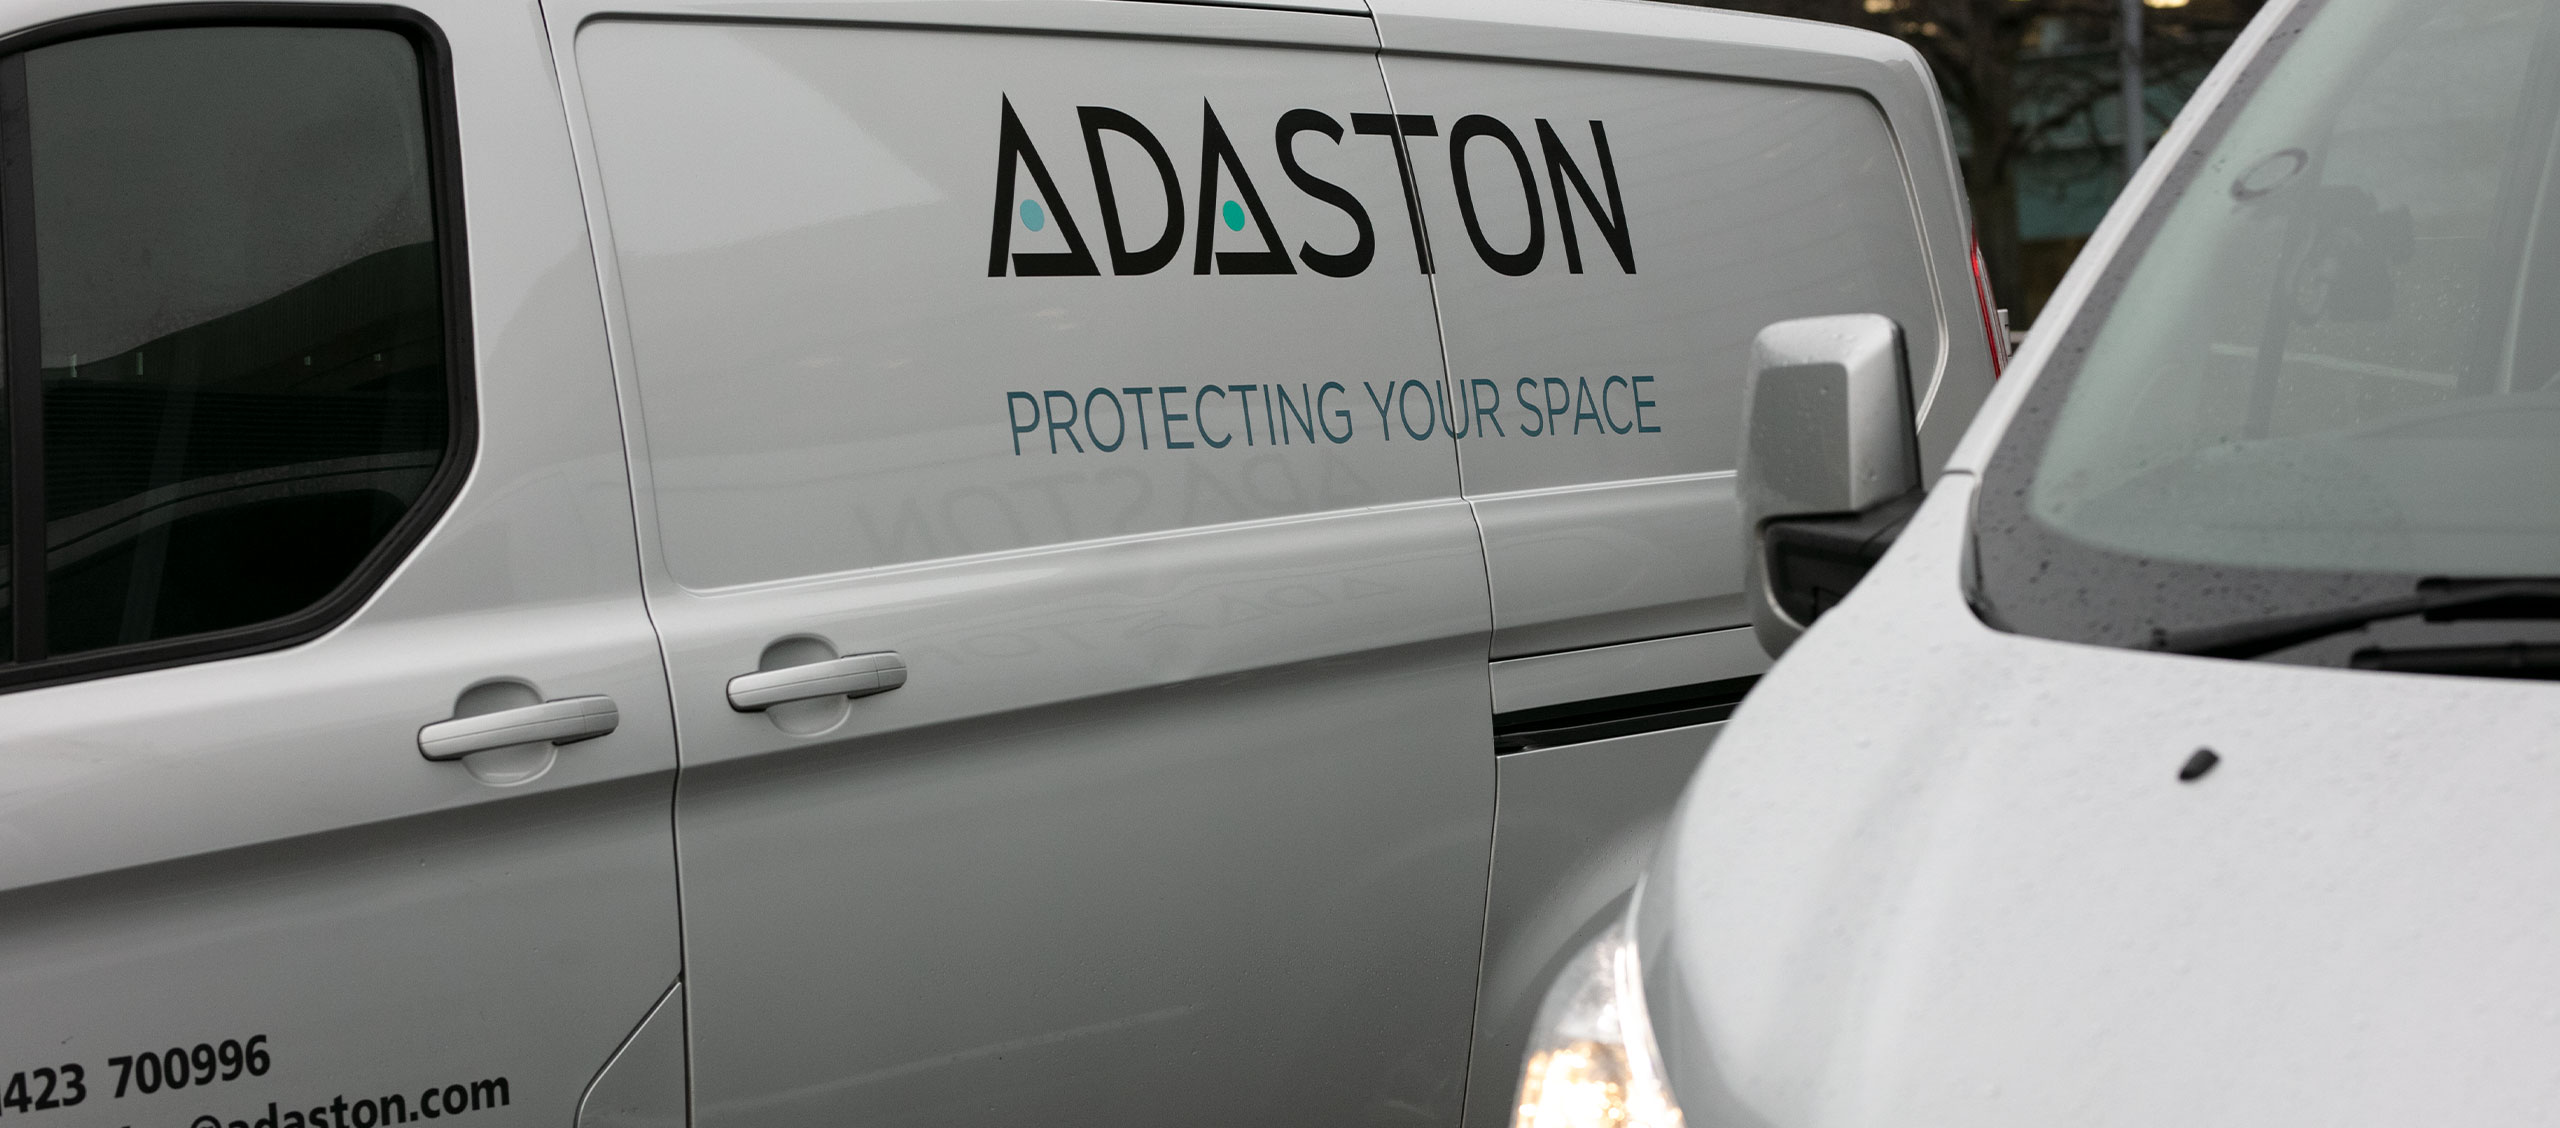 Adaston Van In Manchester